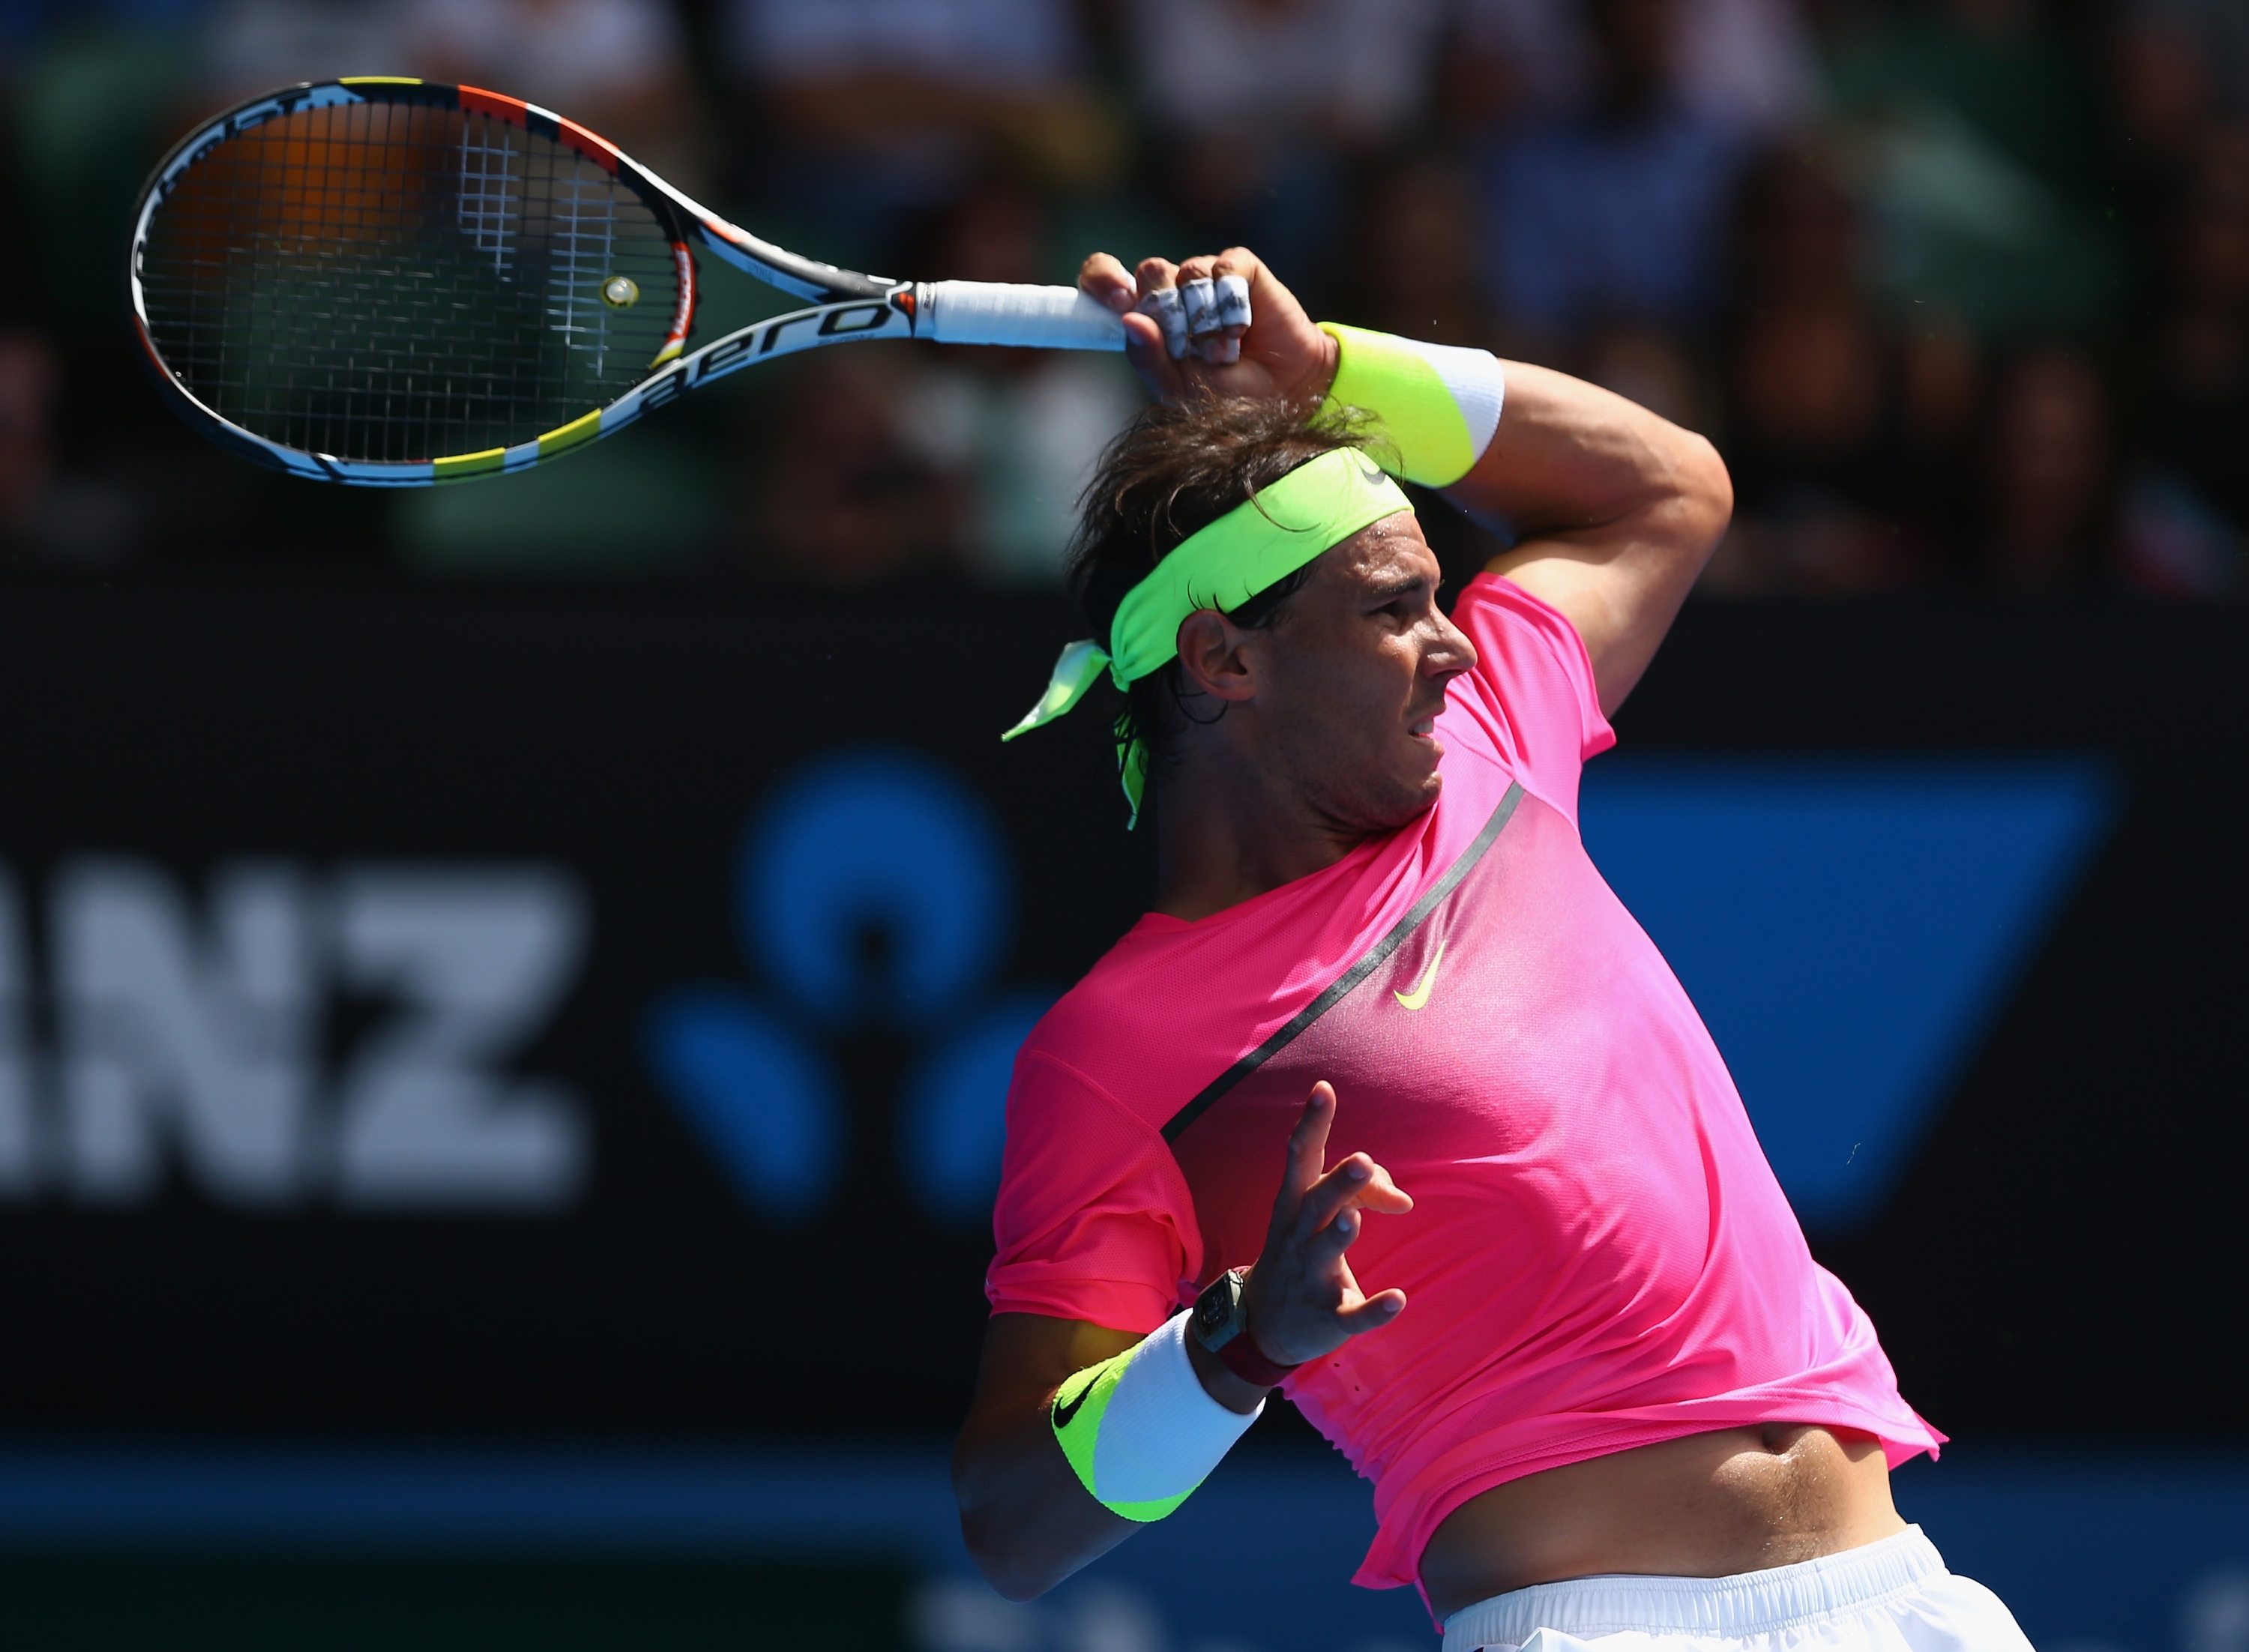 Rafael Nadal vs Mikhail Youzhny Open de Australia 2015 Pict. 2